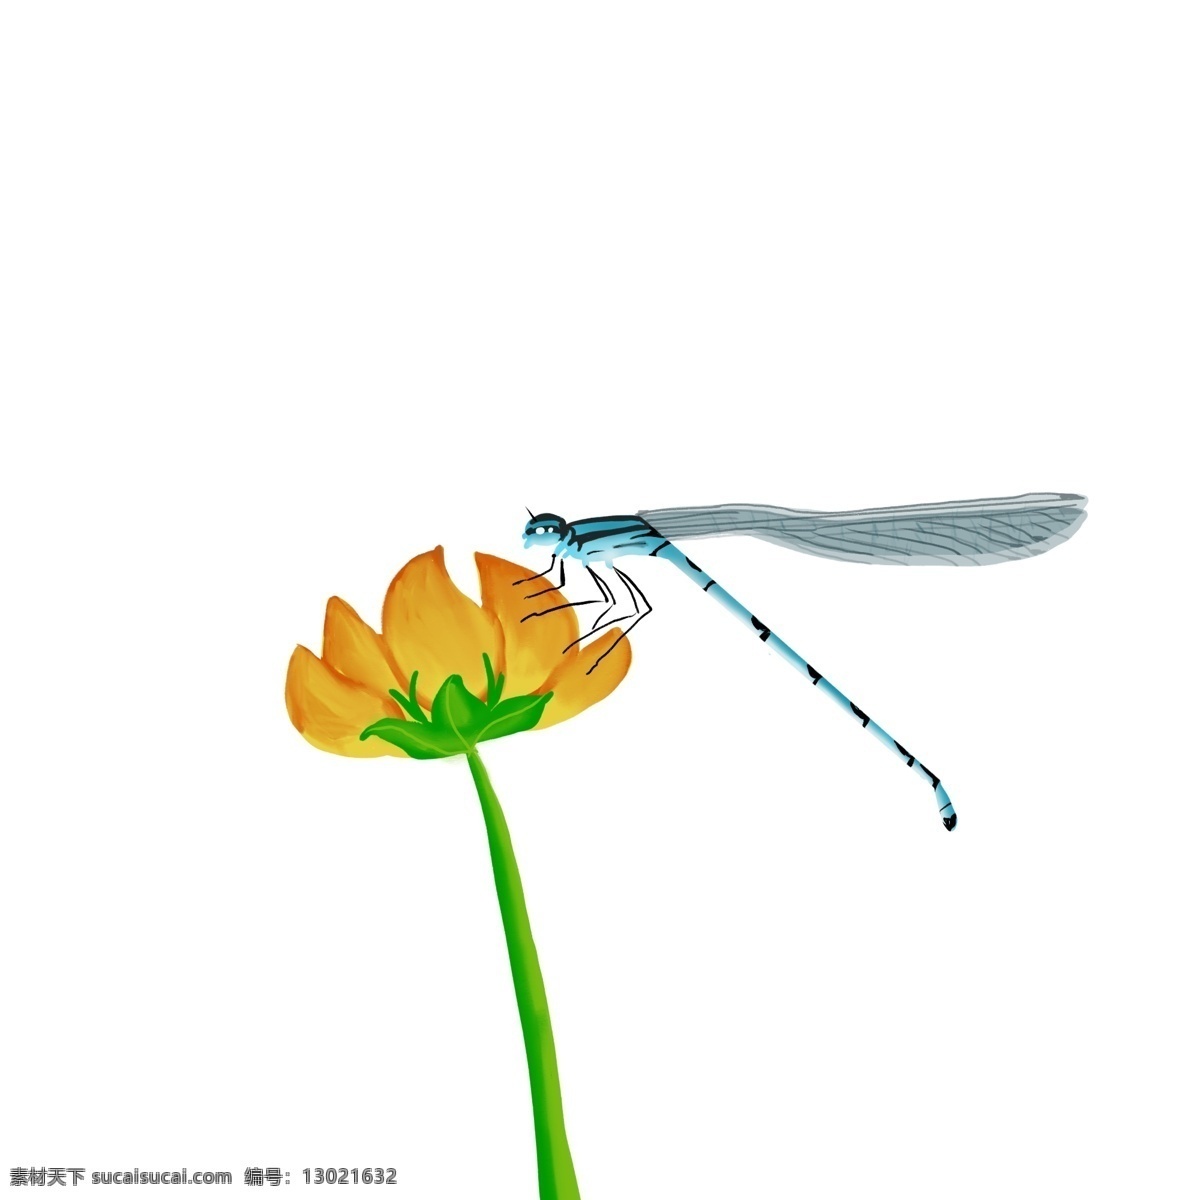 原创 手绘 正在 吃 花蜜 蜻蜓 夏日 昆虫